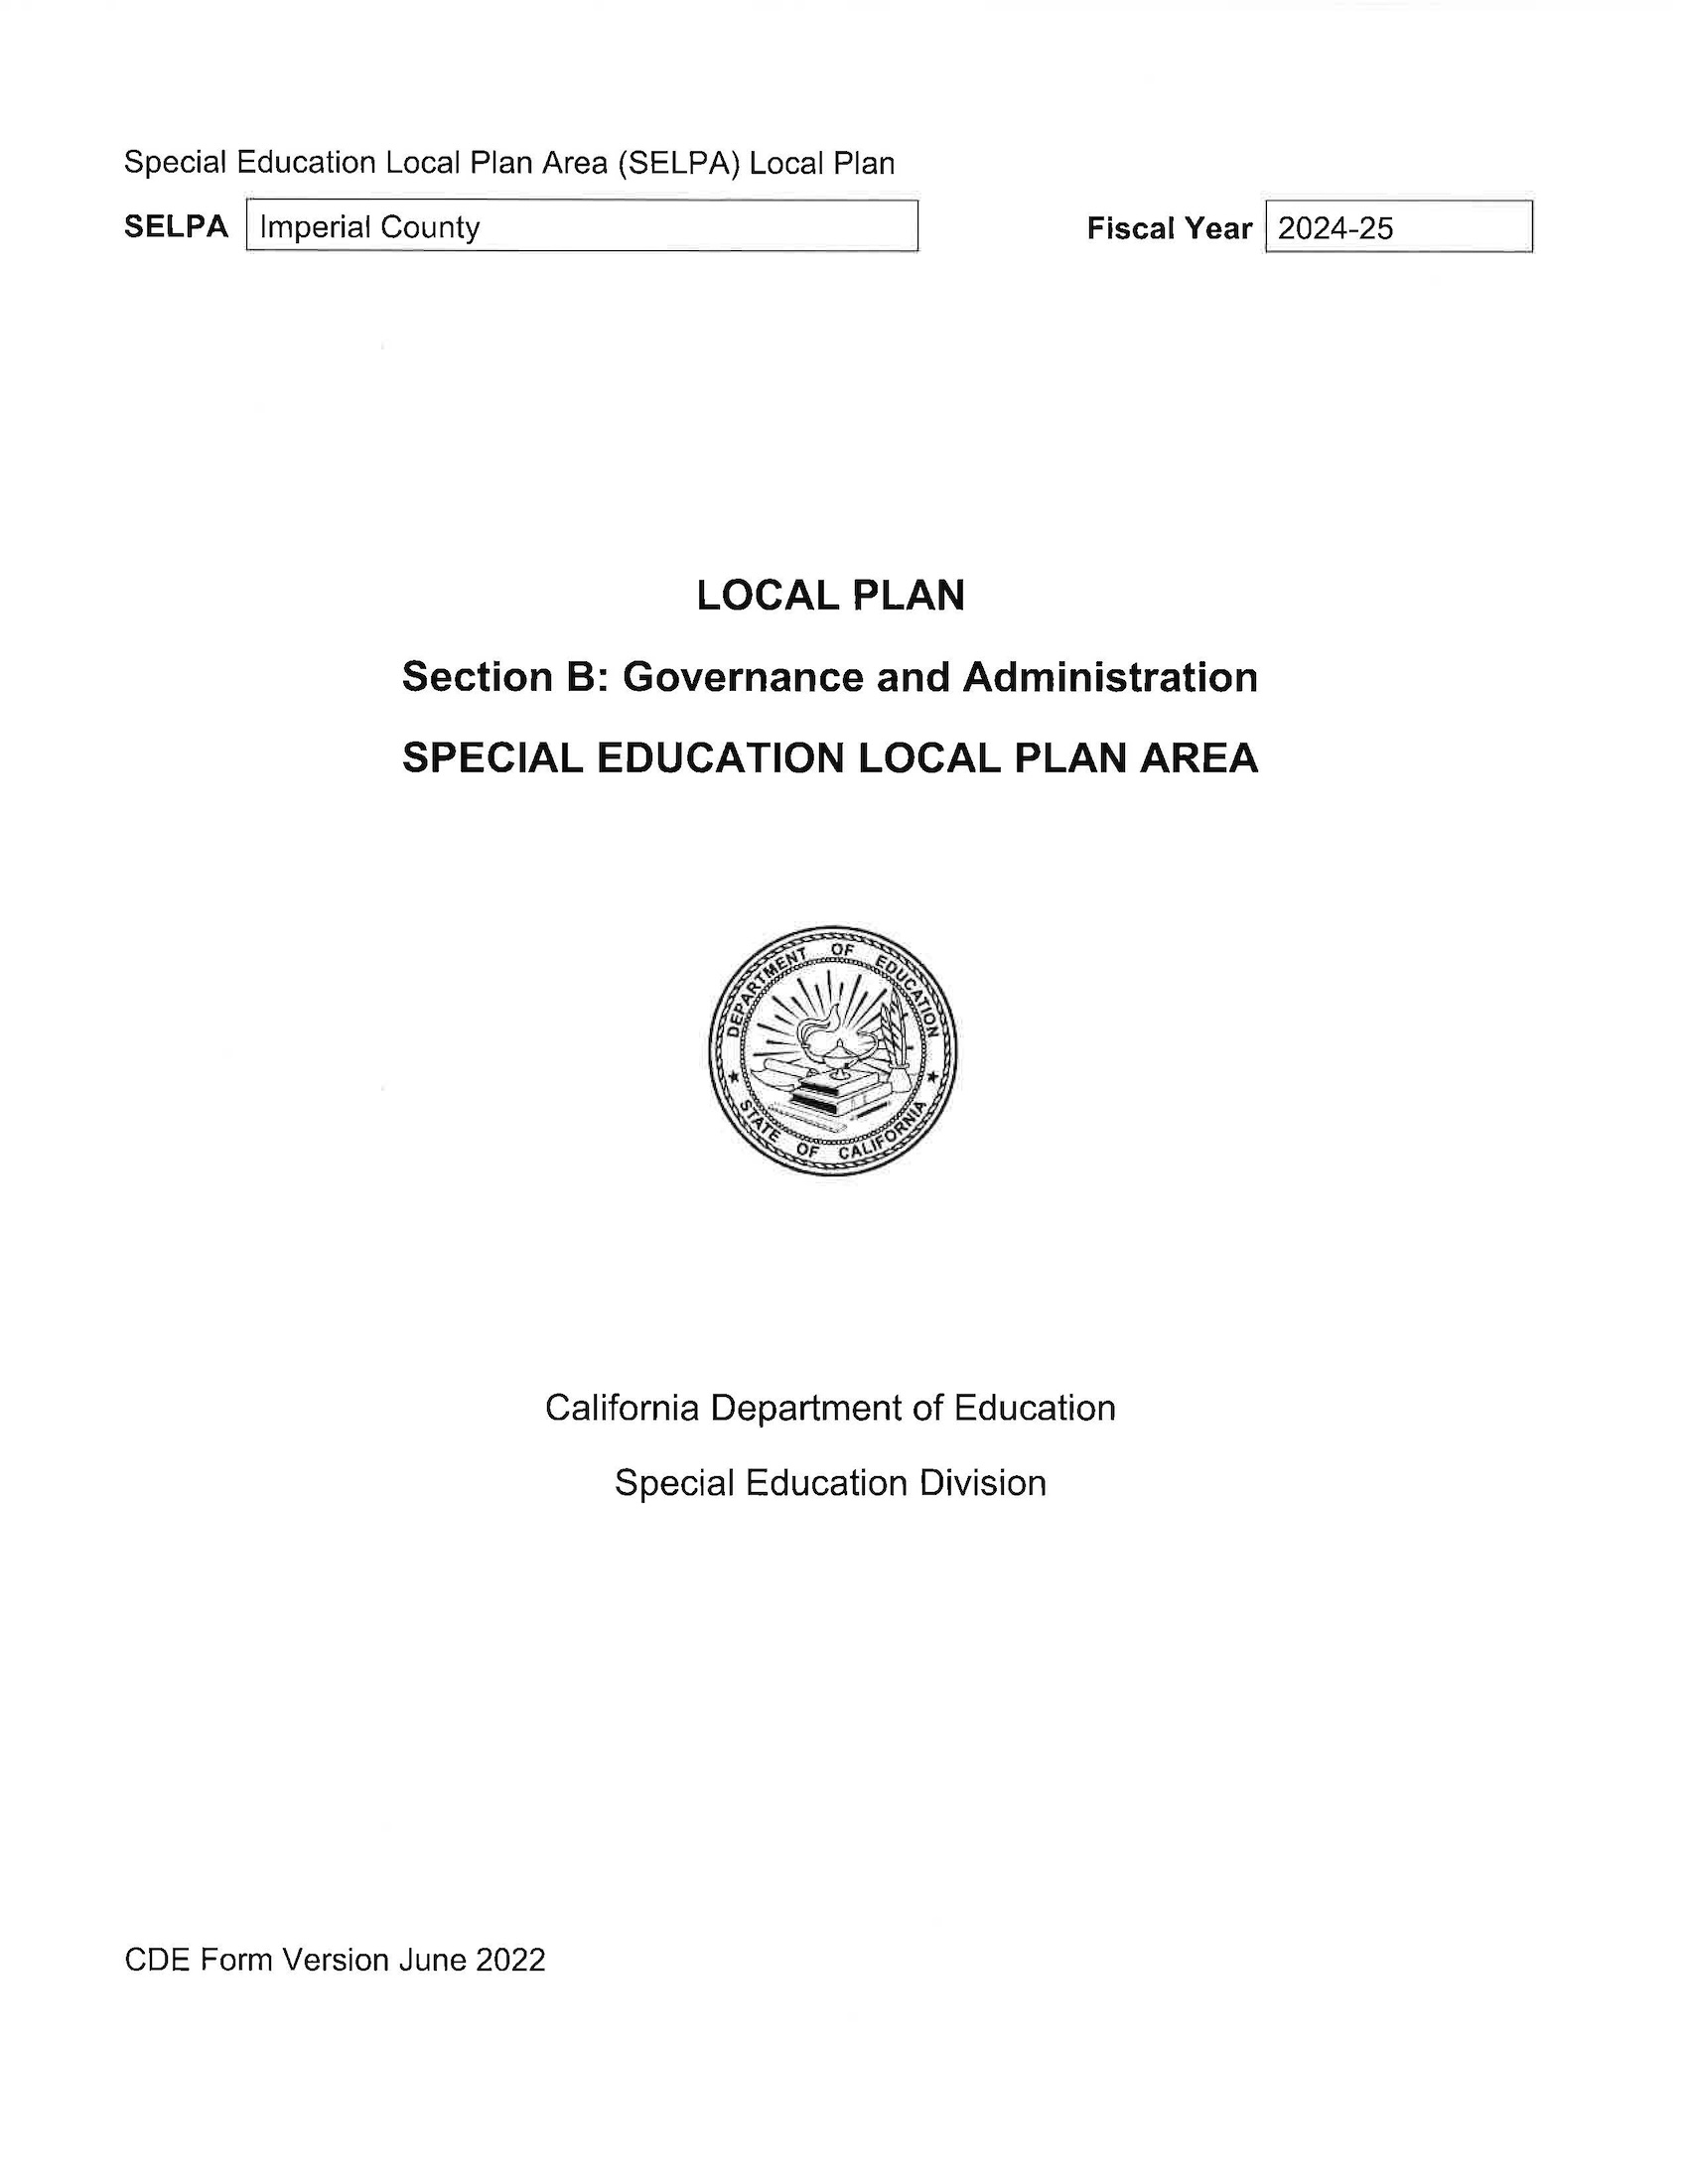 Plan local - Sección B: Gobernanza y administración Educación especial Área del plan local Año fiscal 2024-25 para la cobertura del condado de Imperial